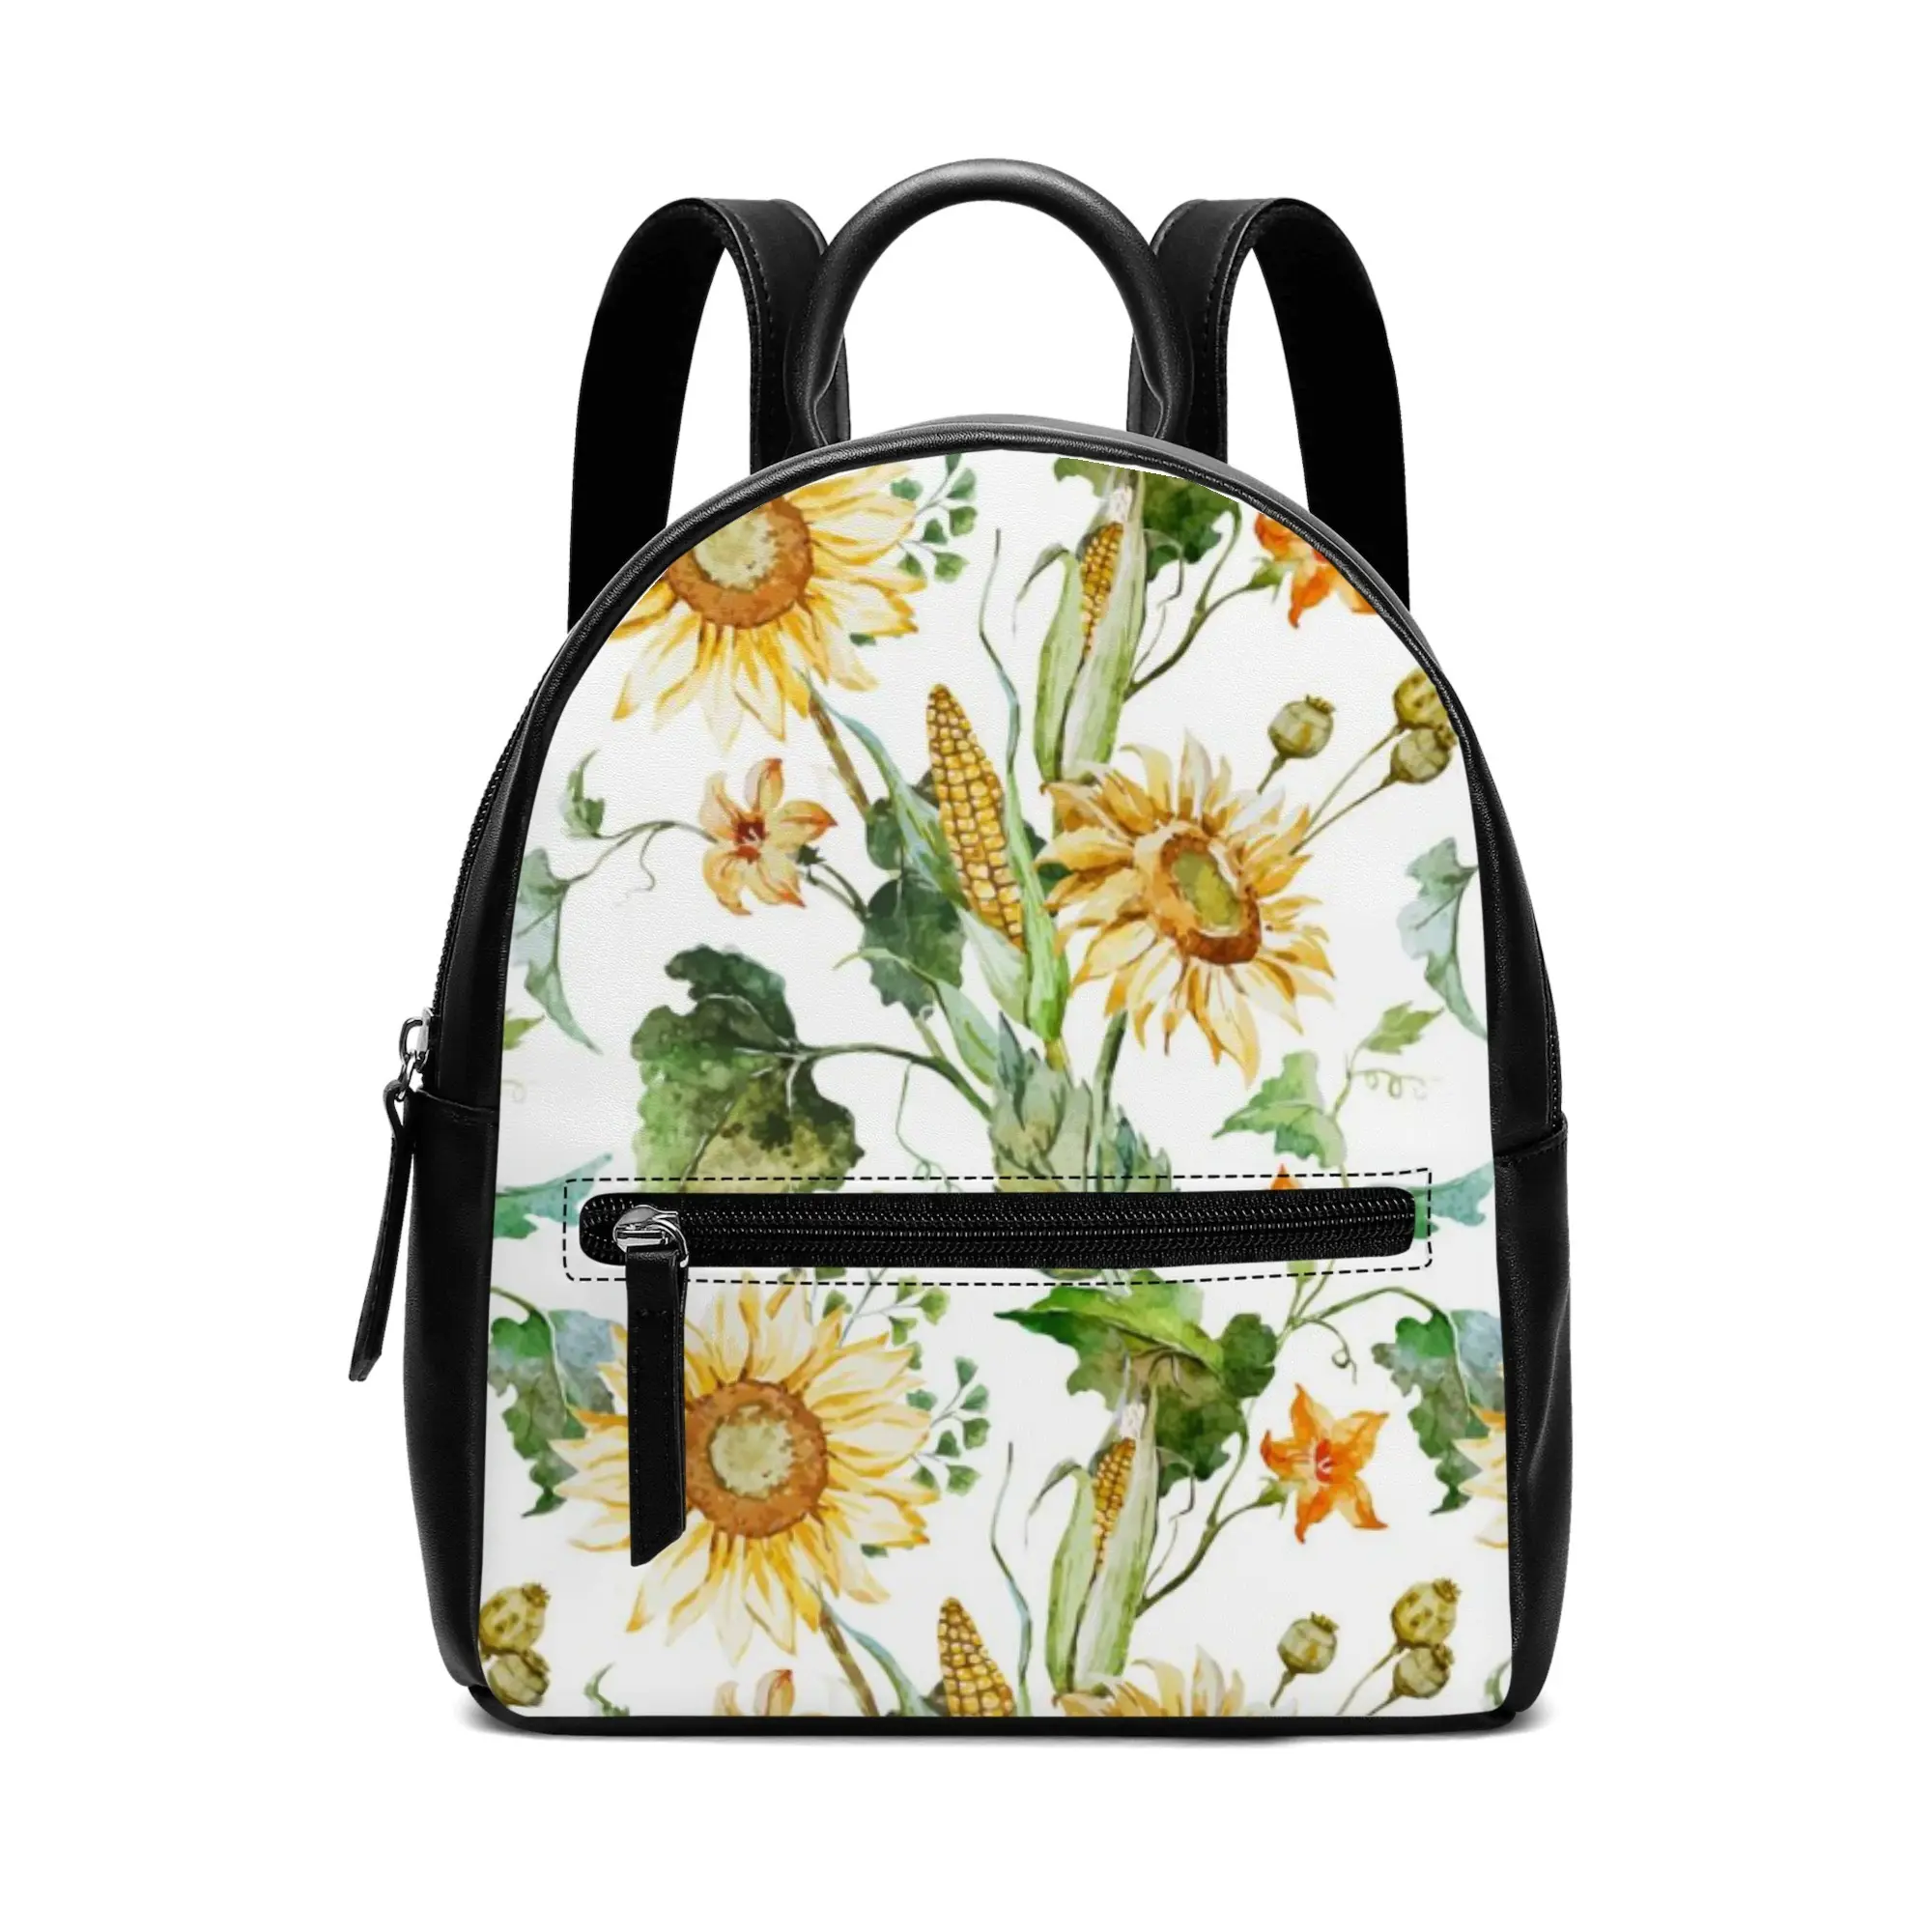 Sıcak satış okul Mini Pu deri özel baskı sırt çantası kadın moda sırt çantası çantalar küçük okul çantaları kızlar için seyahat çantası